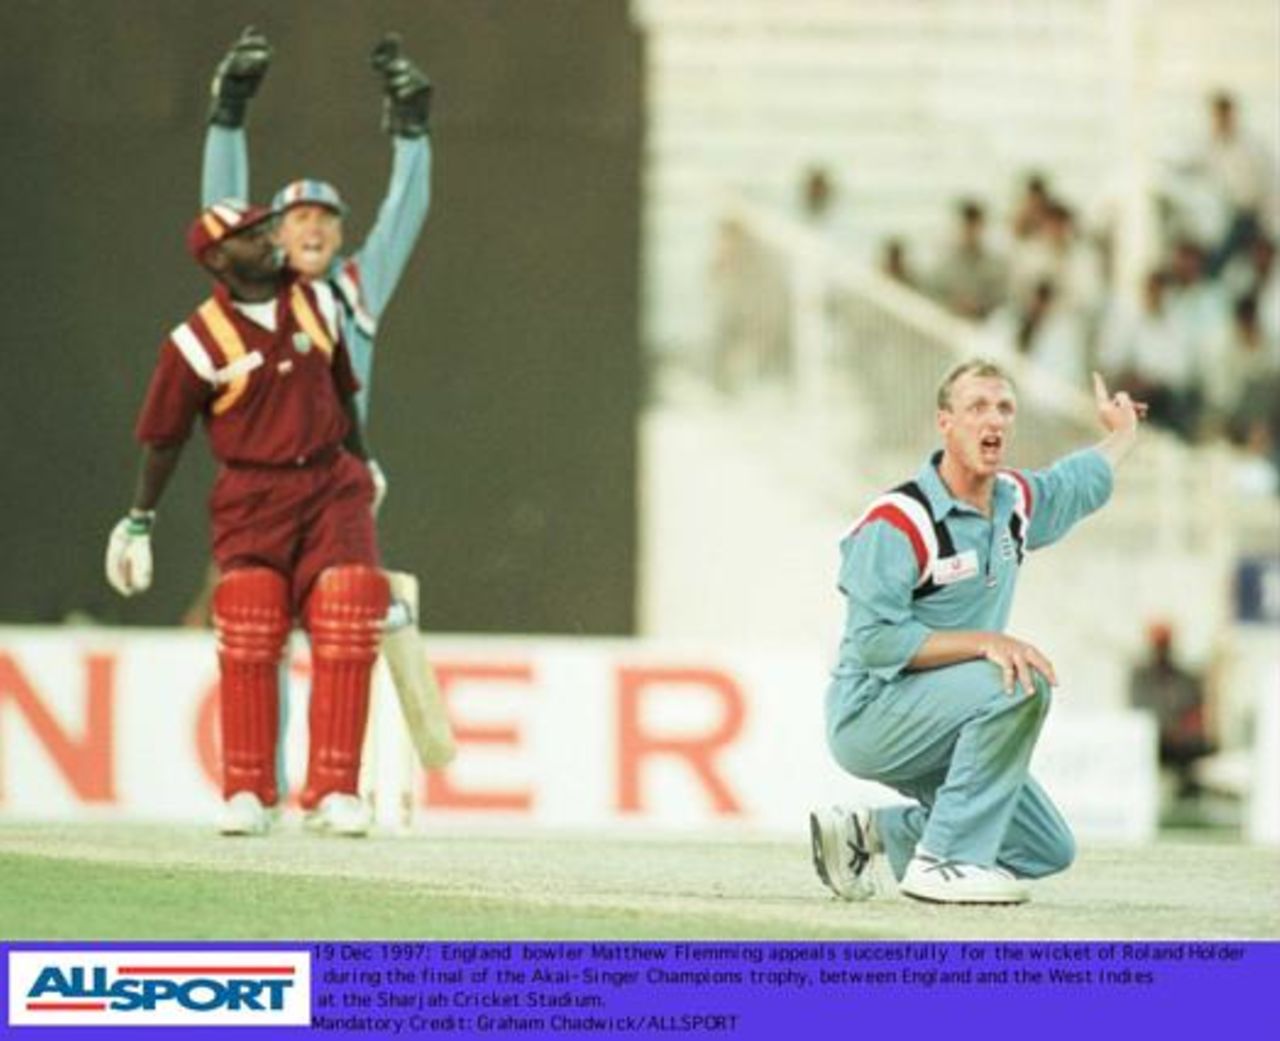 Champion's Trophy Dec 1997 Final, England v West Indies, Holder lbw b Fleming